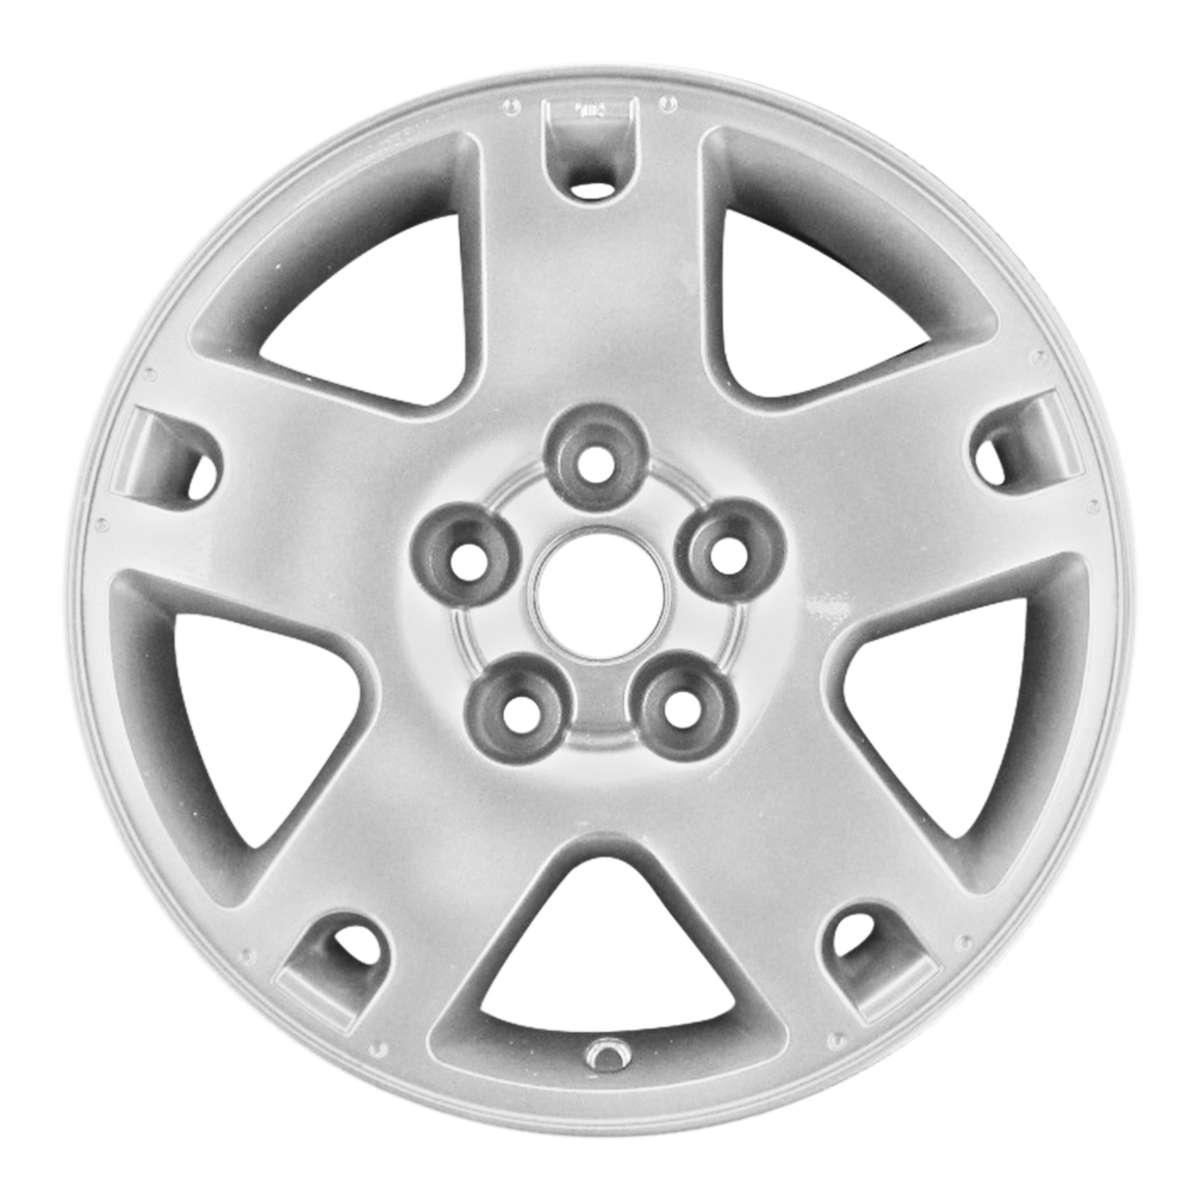 2005 Ford Escape 16" OEM Wheel Rim W3459AS